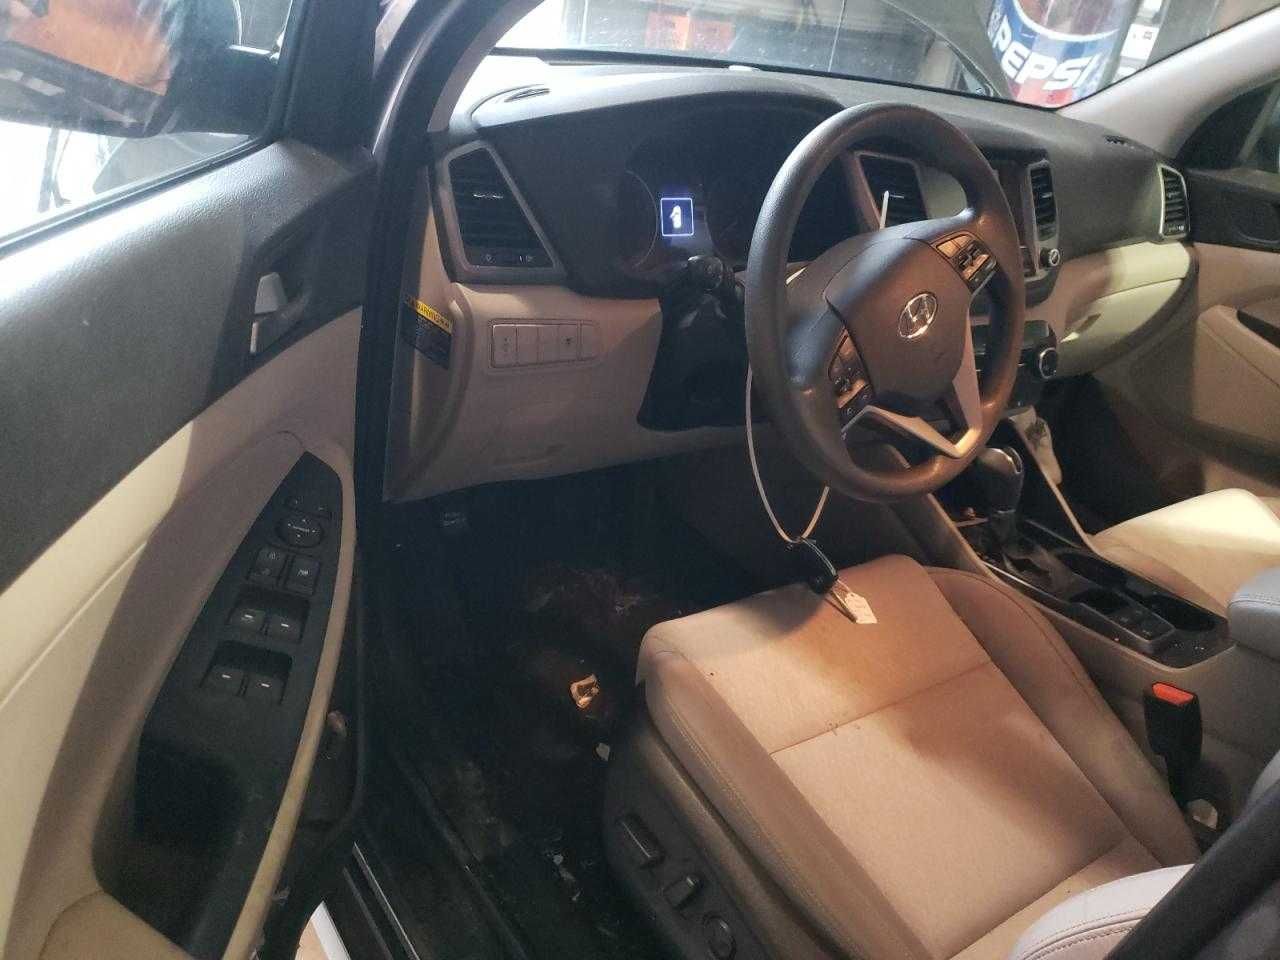 Hyundai Tucson SEL 2018